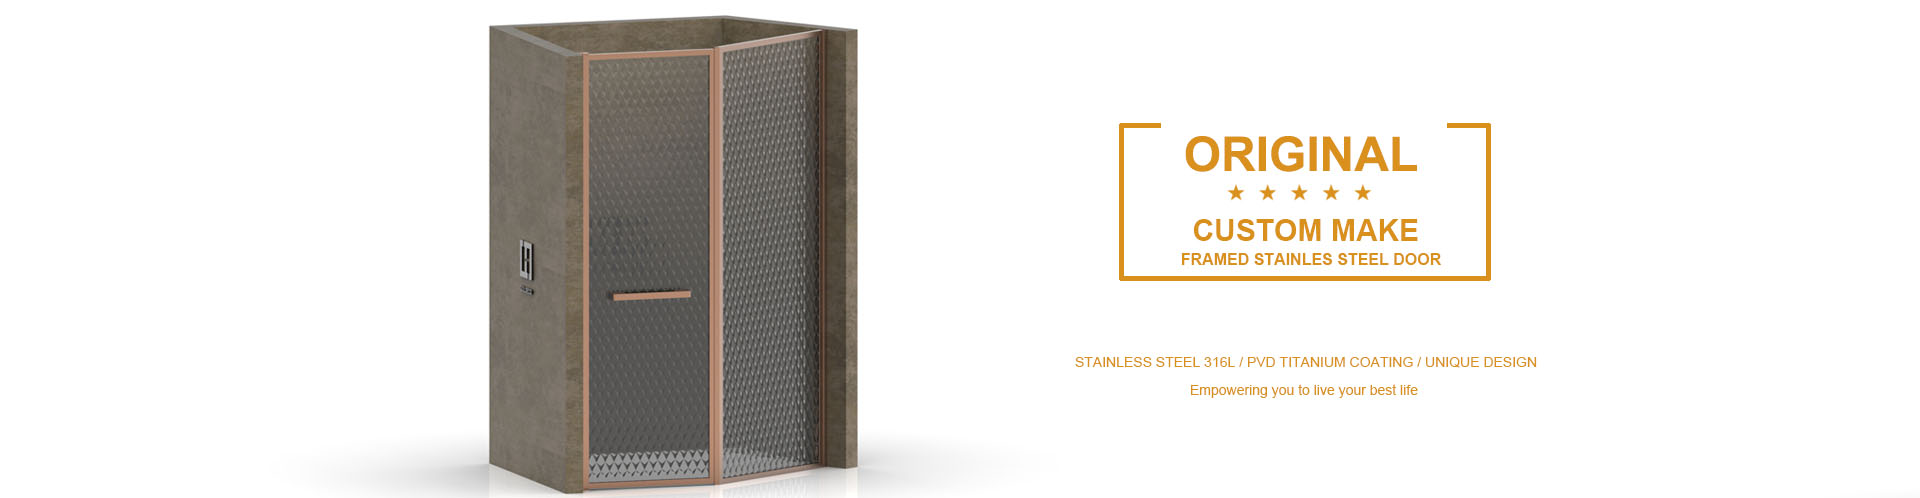 Goldeco - Stainless Steel Shower Door Manufacturer